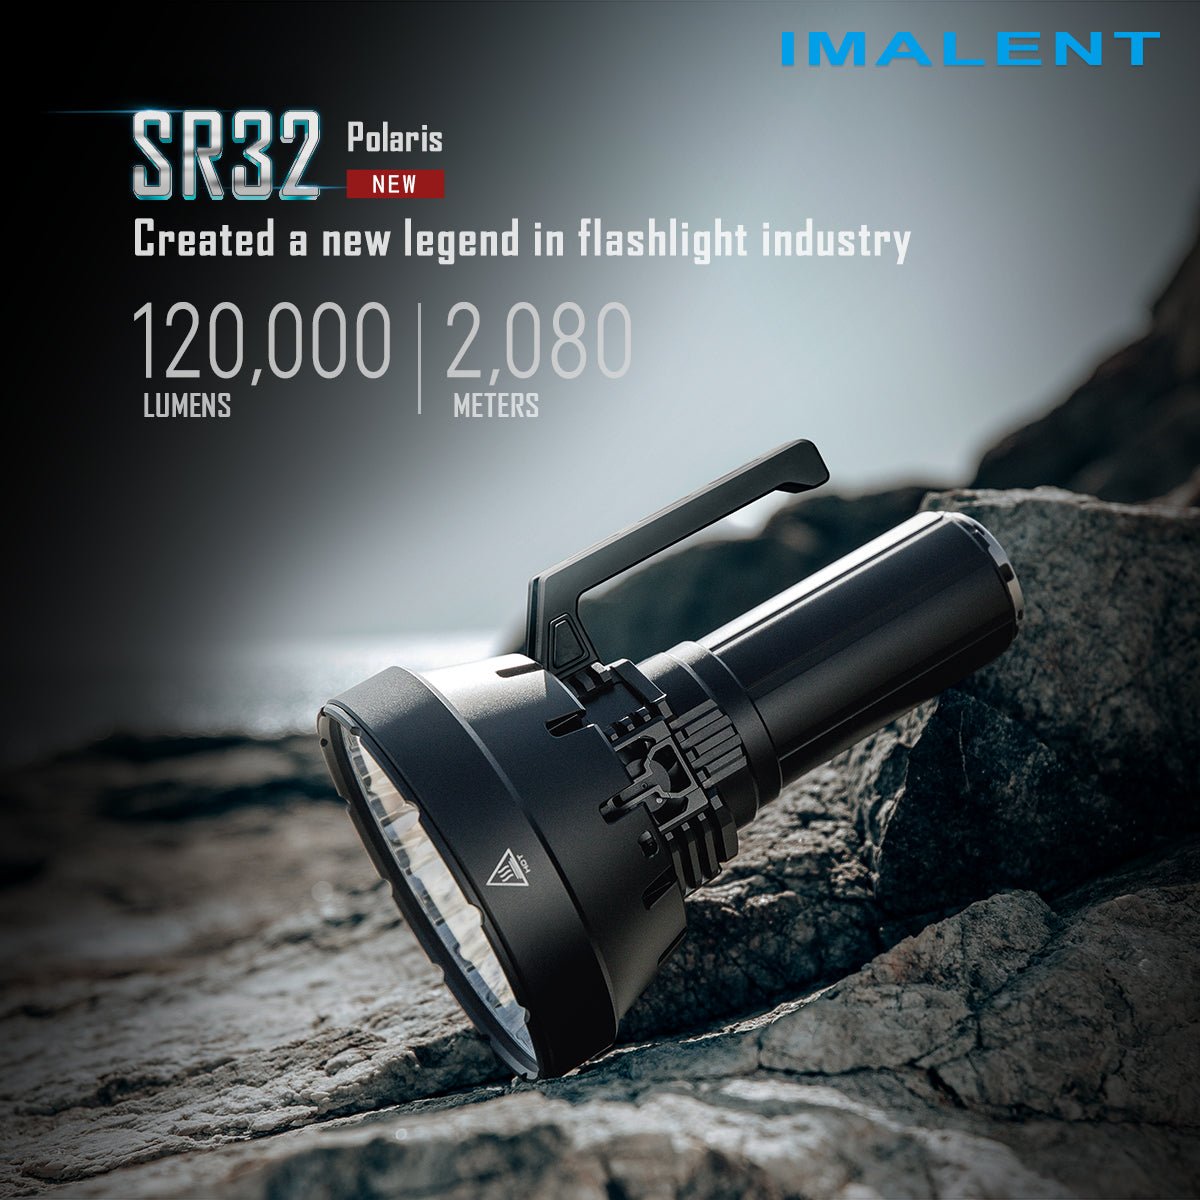 IMALENT MS32 La lampe de poche la plus puissante au monde - IMALENT®